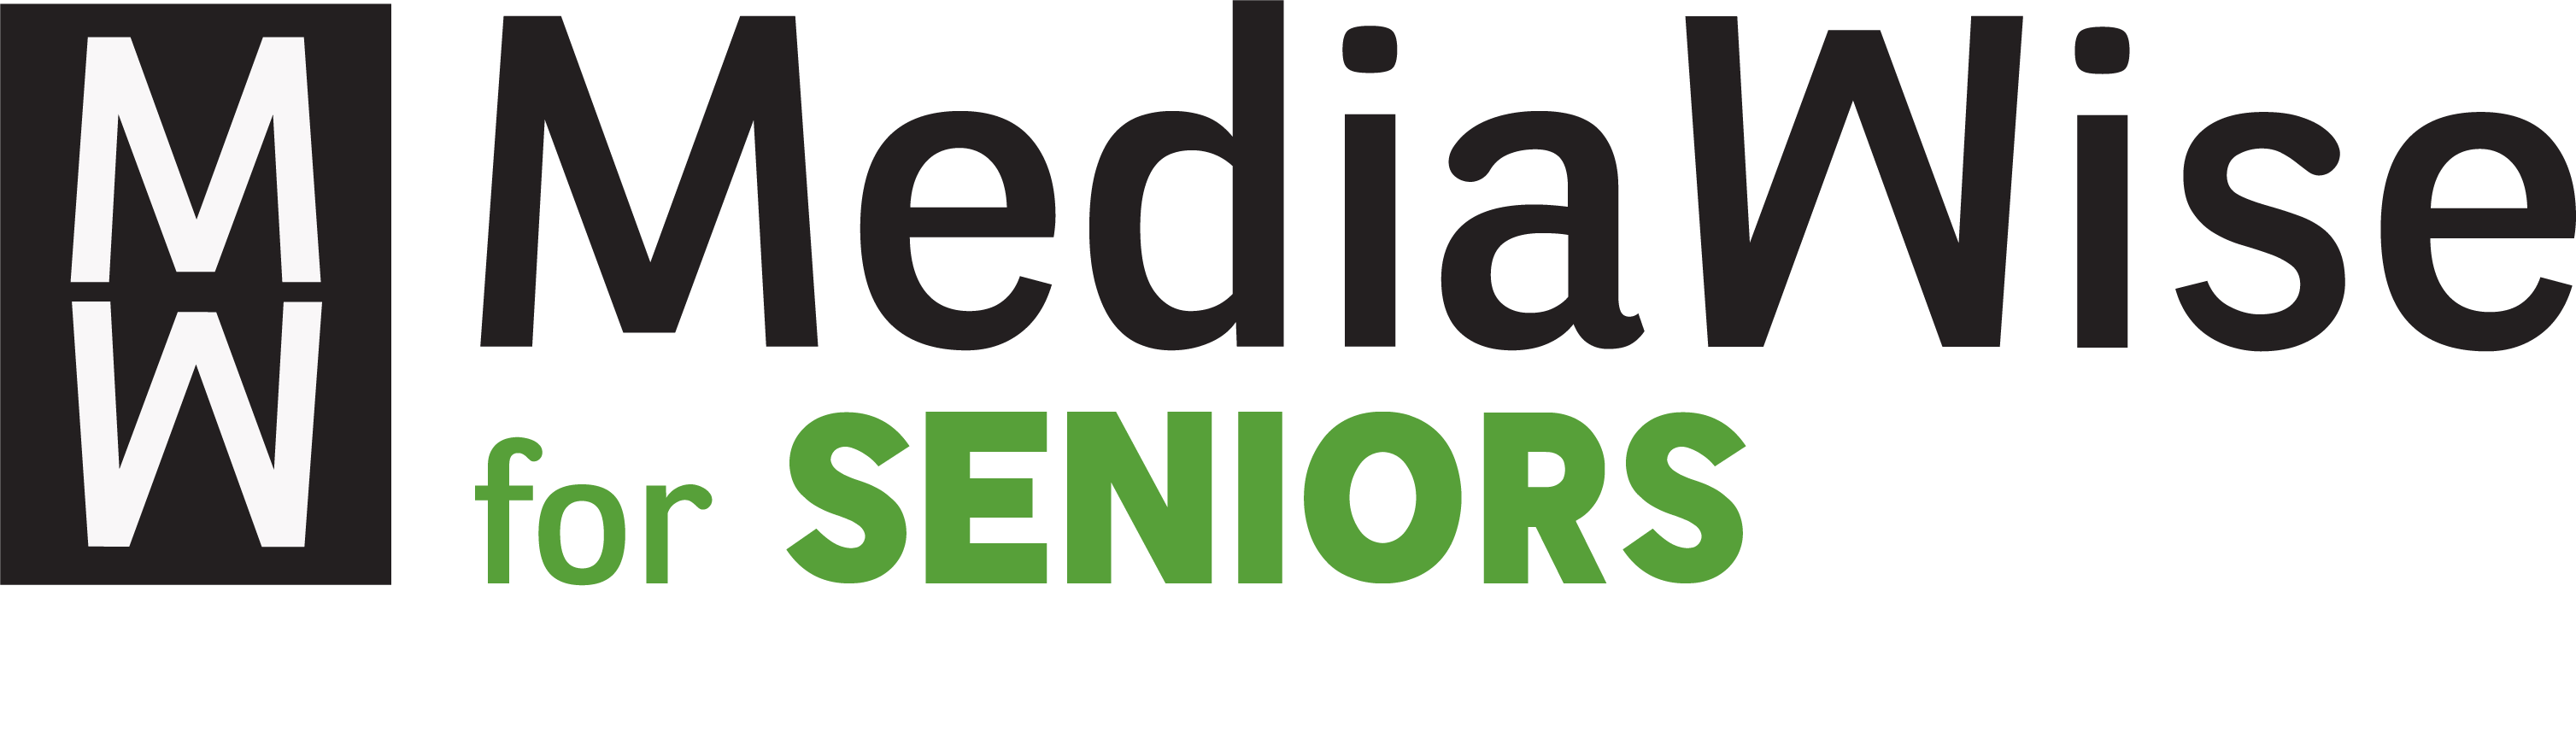 MediaWise for Seniors Logo